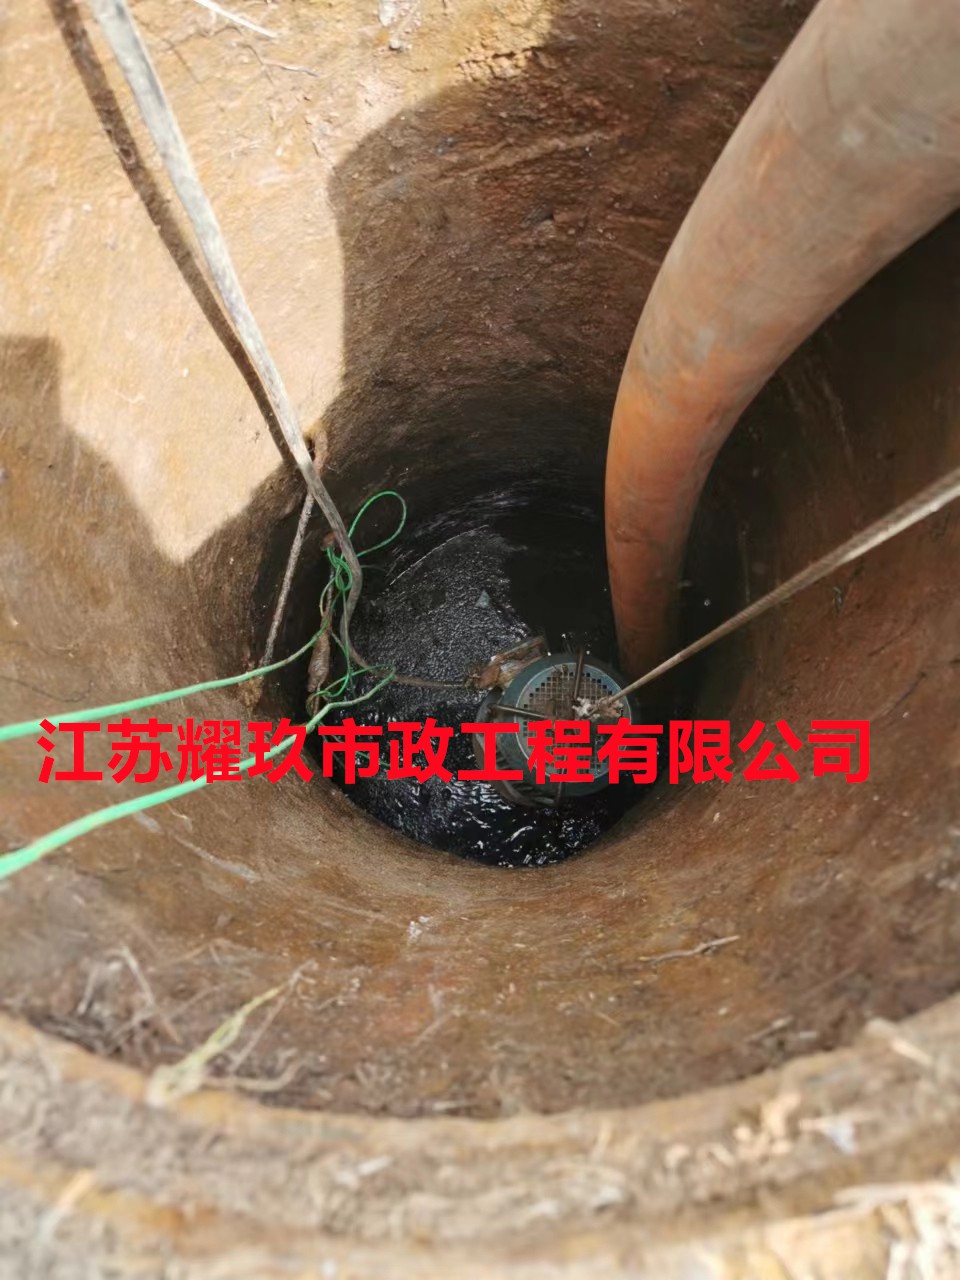 安徽省淮北市雨污混接管道检测改造公司